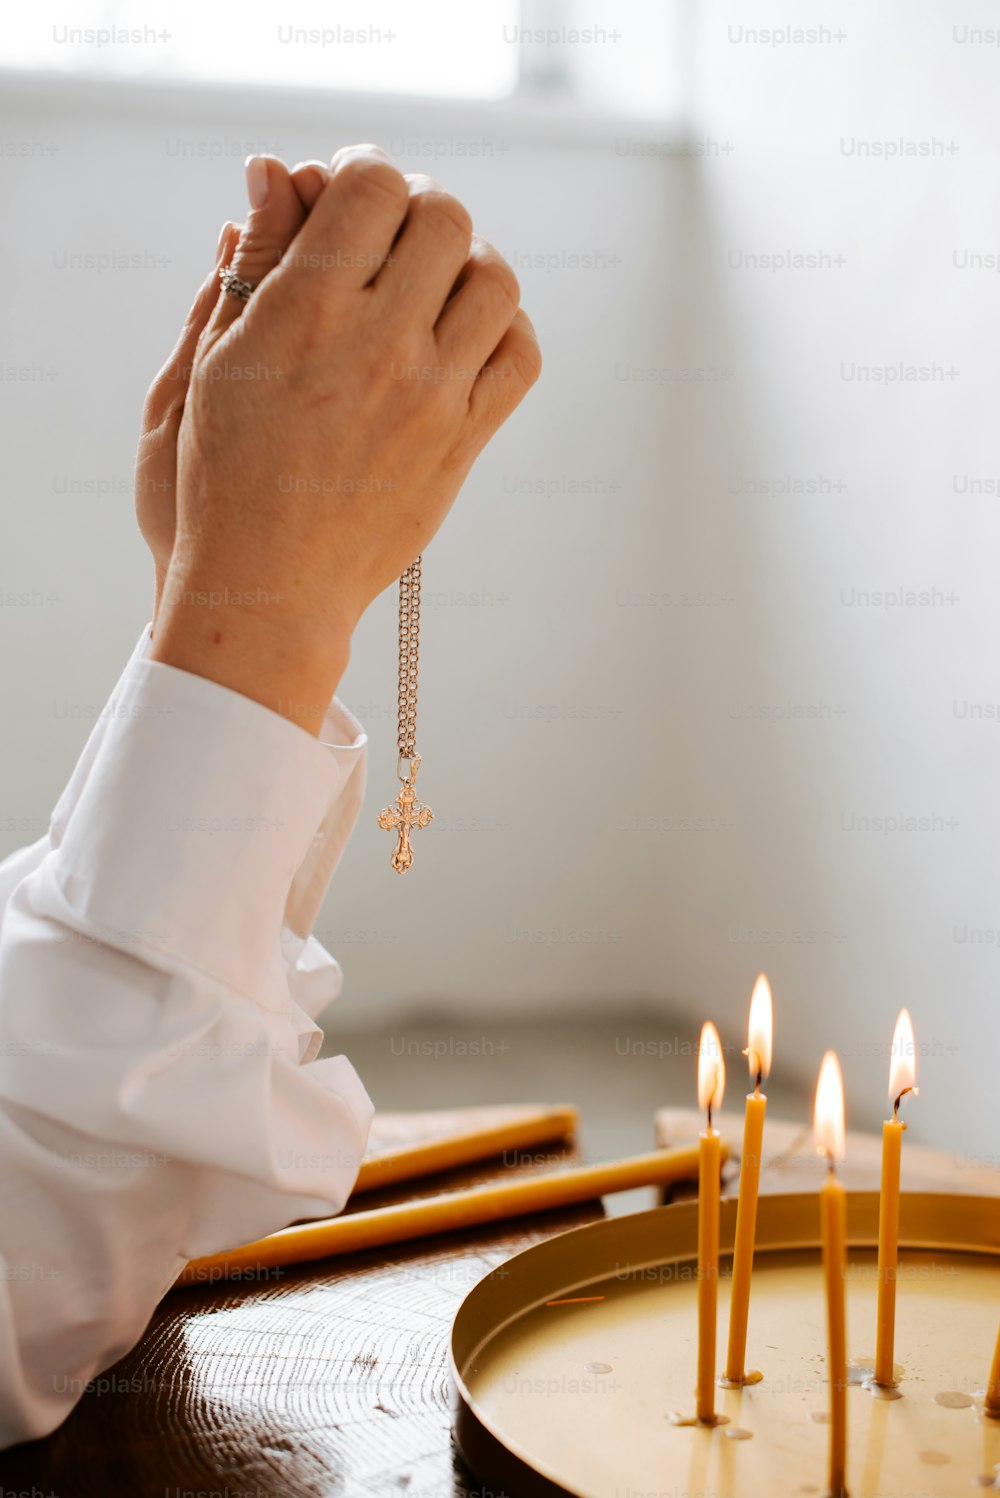 Una persona sosteniendo un rosario frente a un pastel con velas